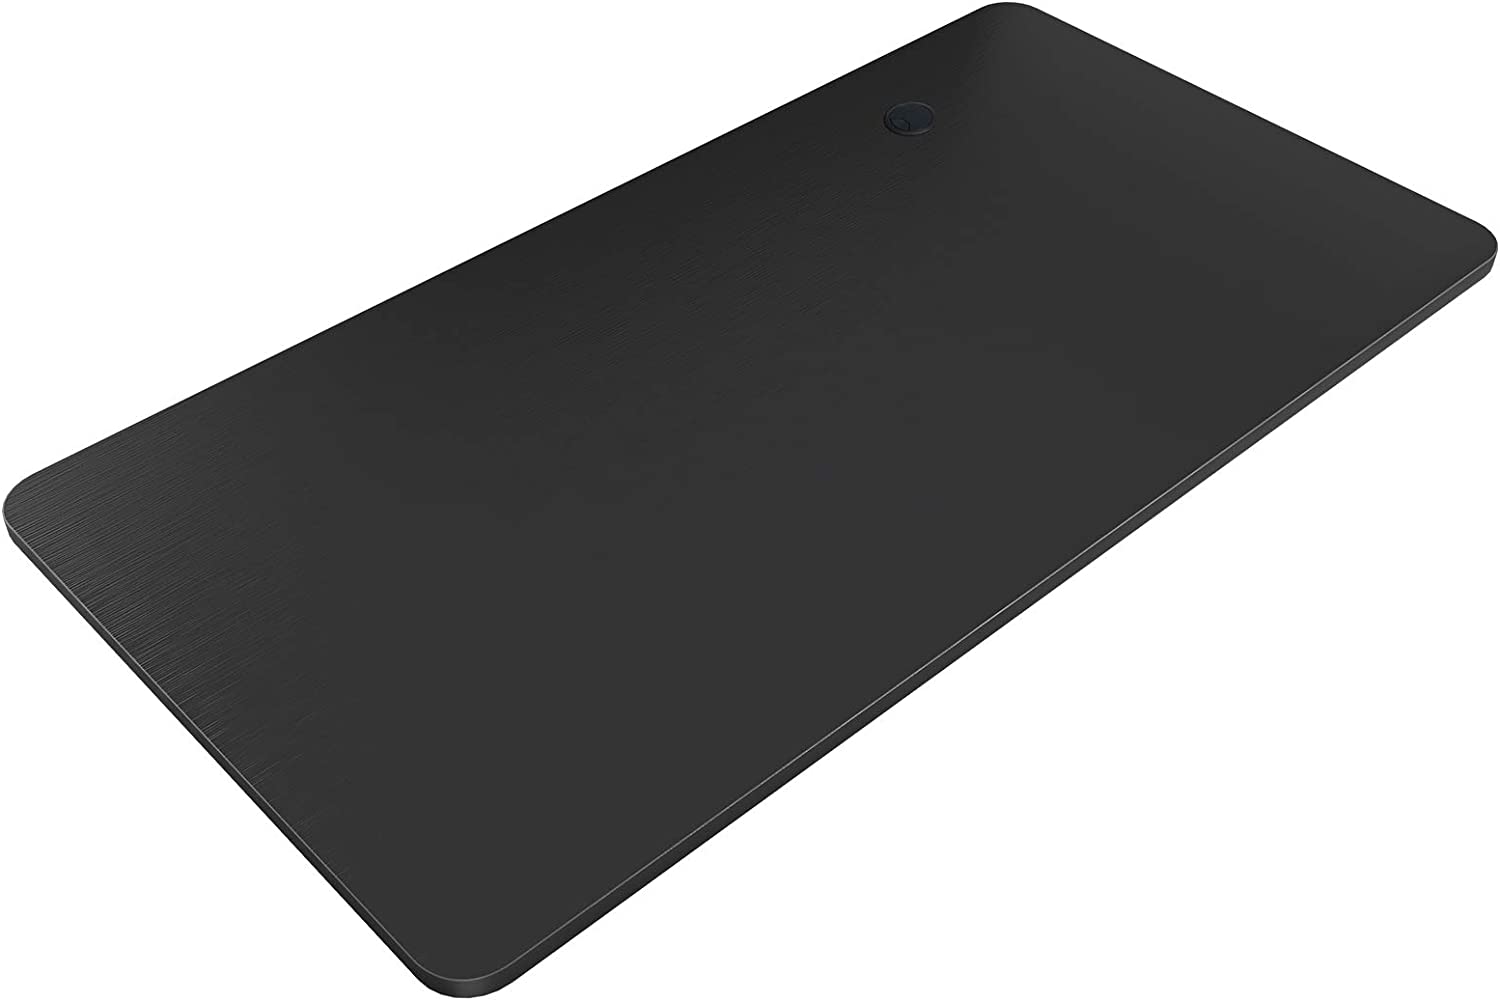 160x80cm black desktop for computer desk for home office